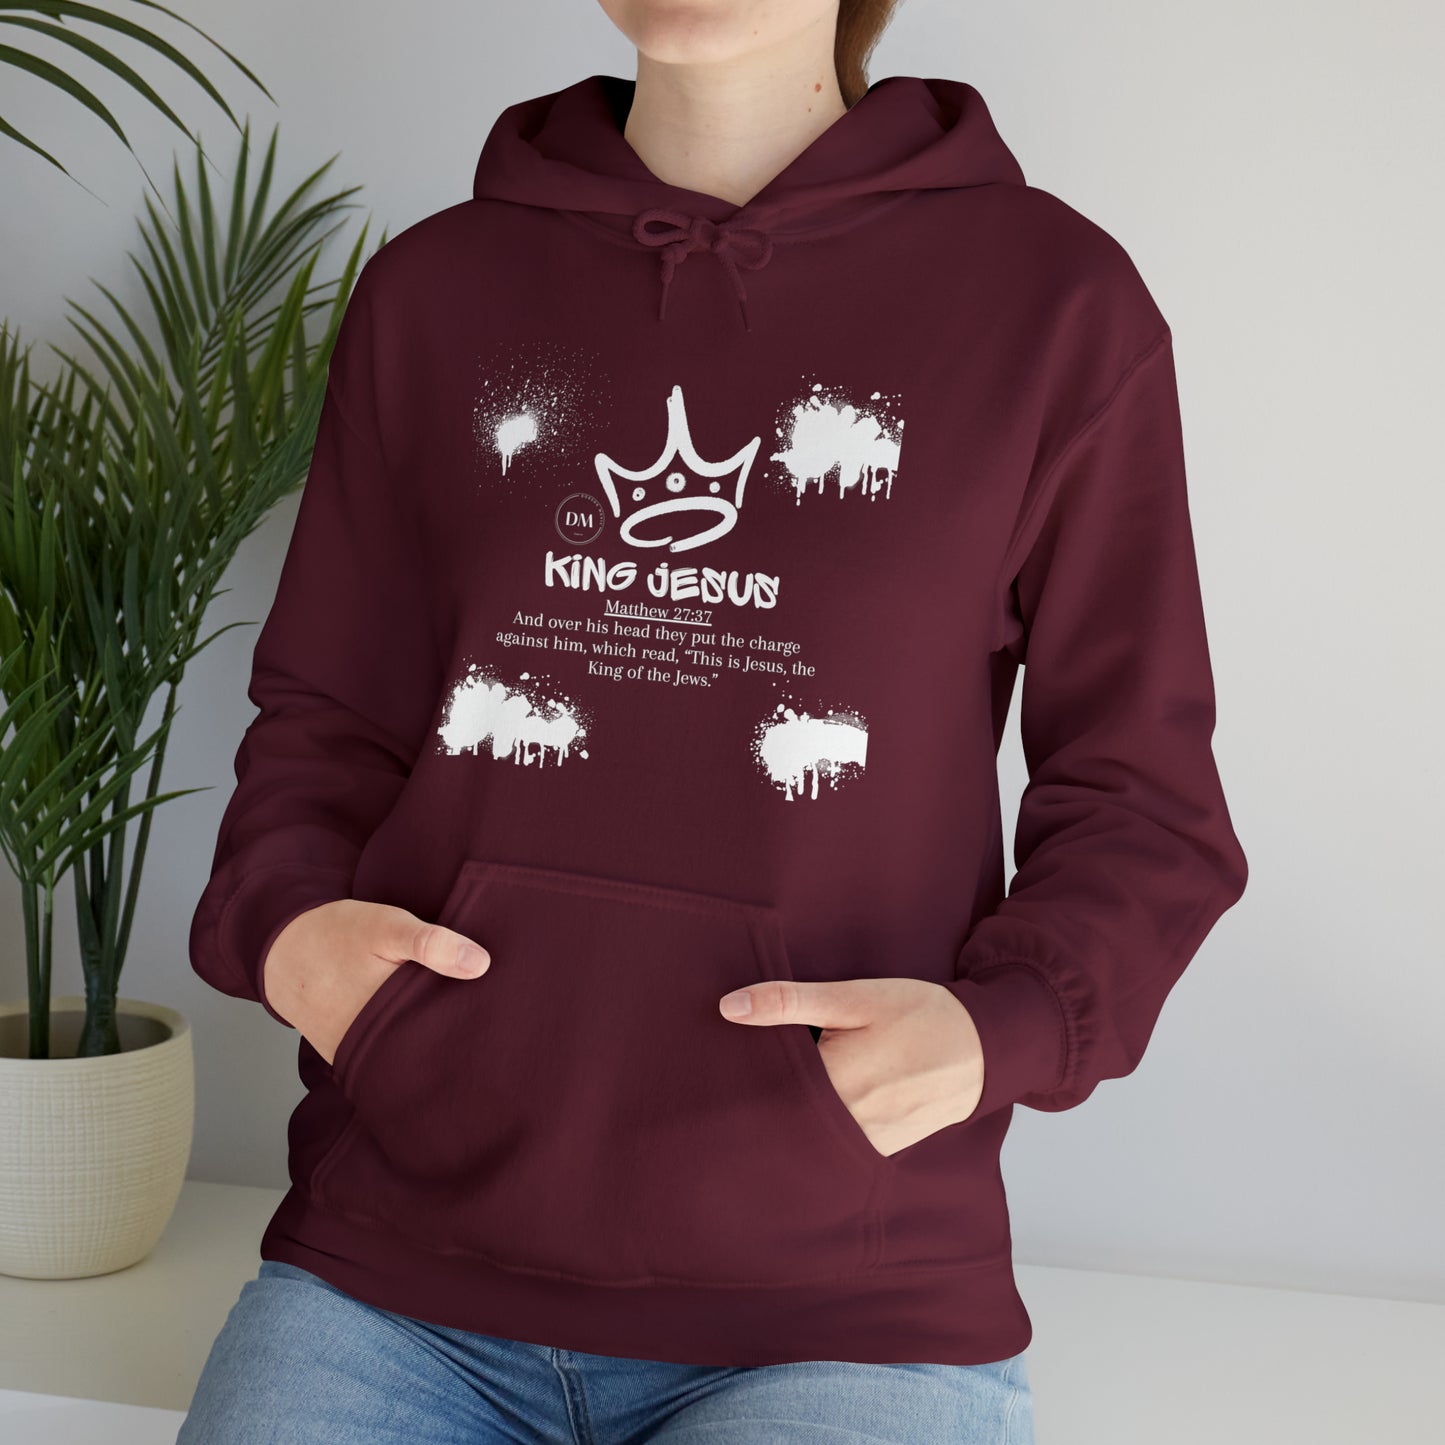 DM - King Jesus Hooded Sweatshirt